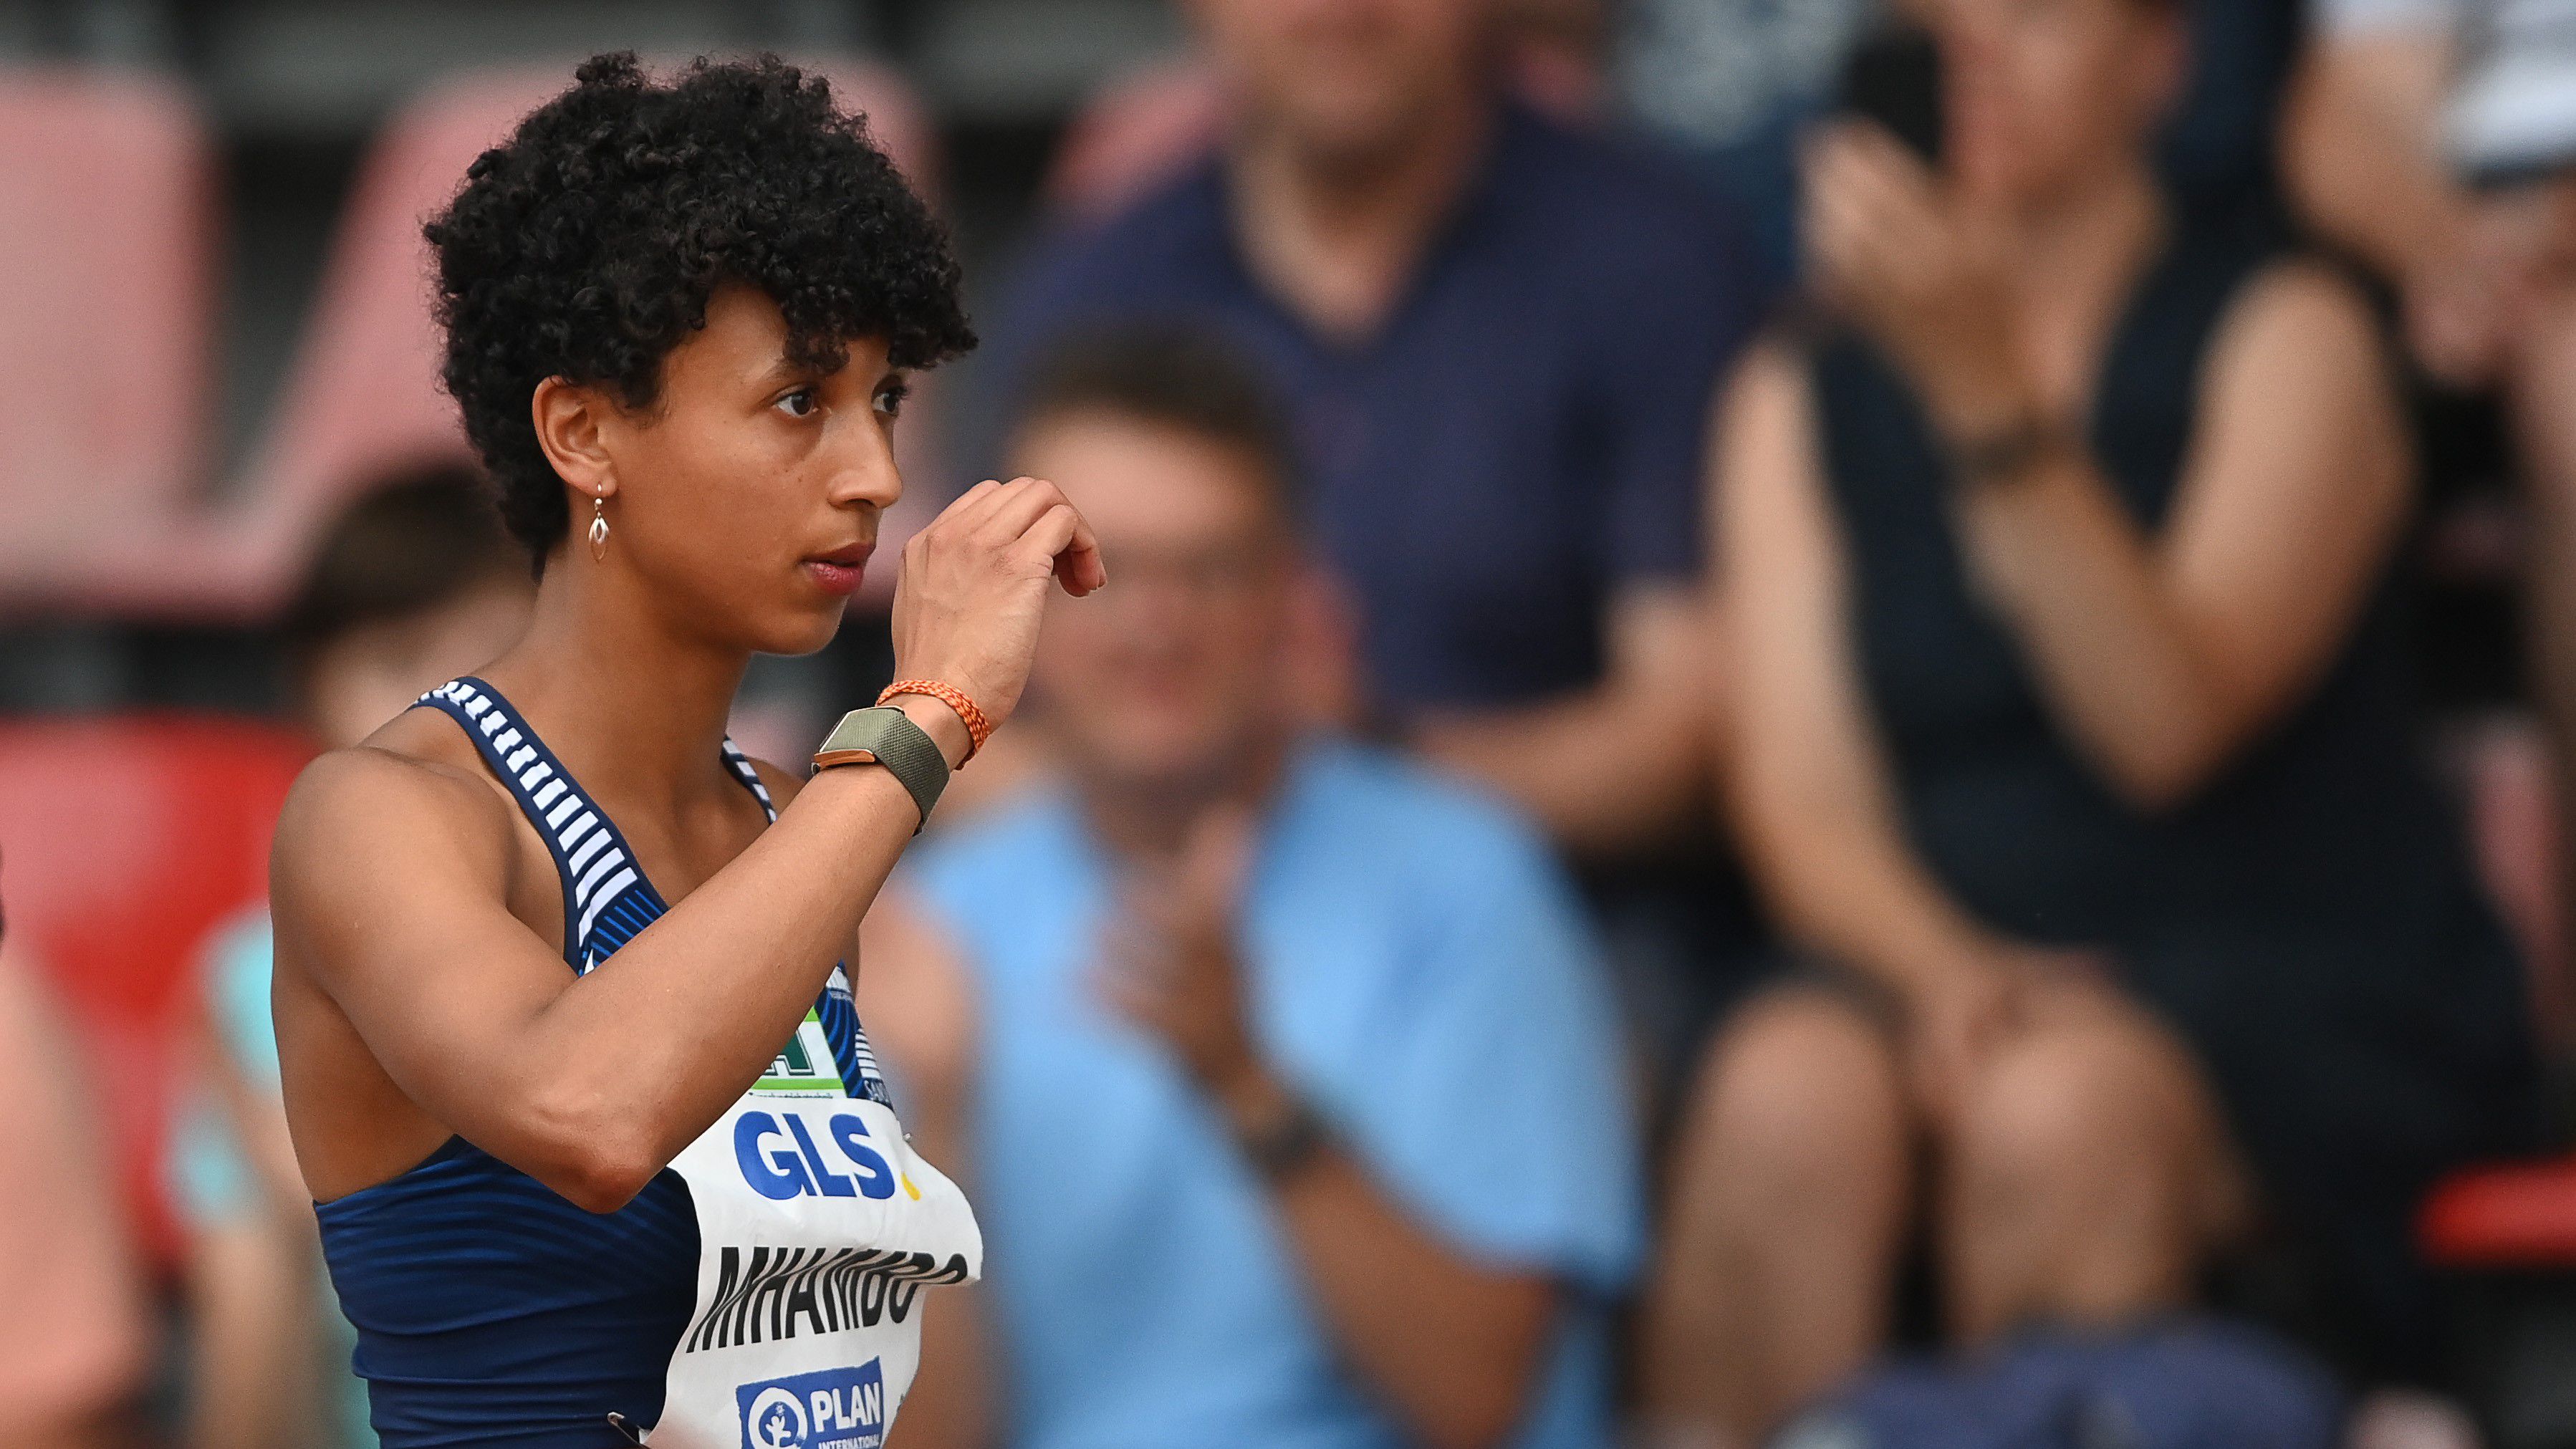 Januárban tér vissza a női távolugrás olimpiai címvédője